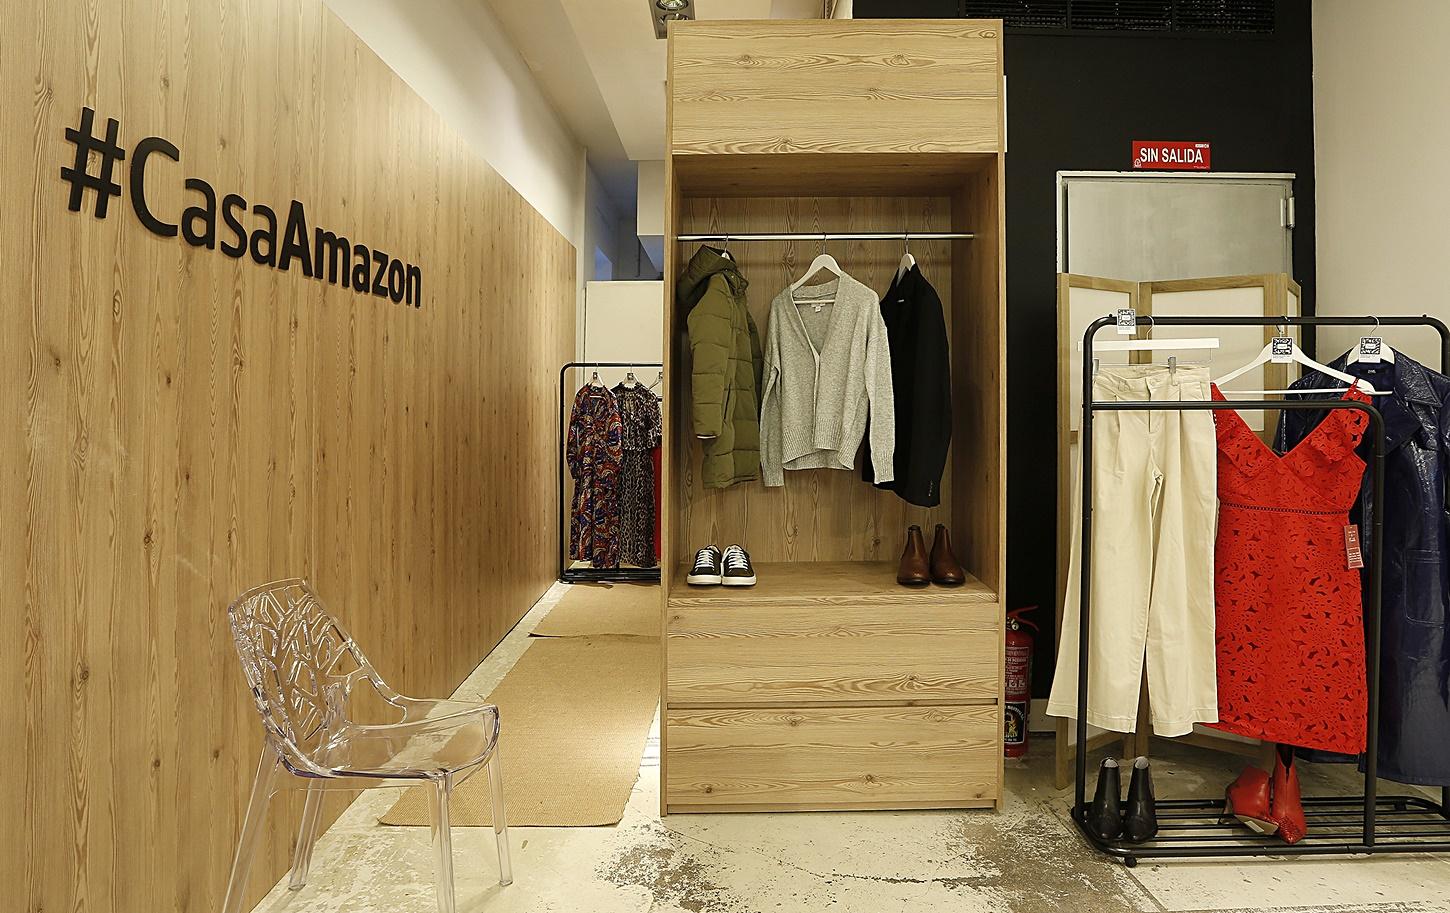 Imagen de Casa Amazon, primera tienda física de la compañía abierta en España durante la semana del Cyber Monday y el Black Friday.